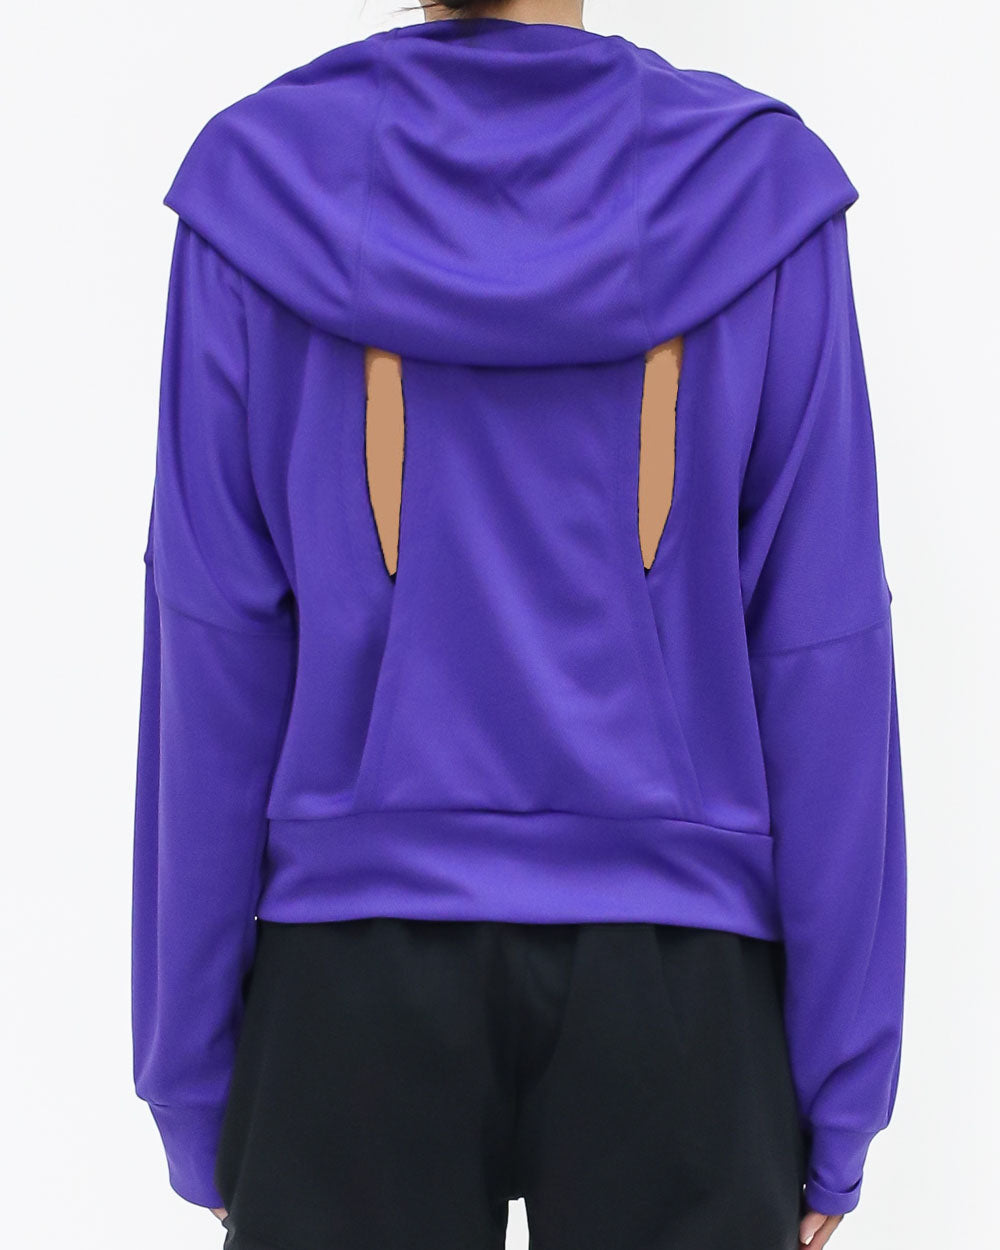 紫色鏤空後背連帽衫運動上衣 *預購*